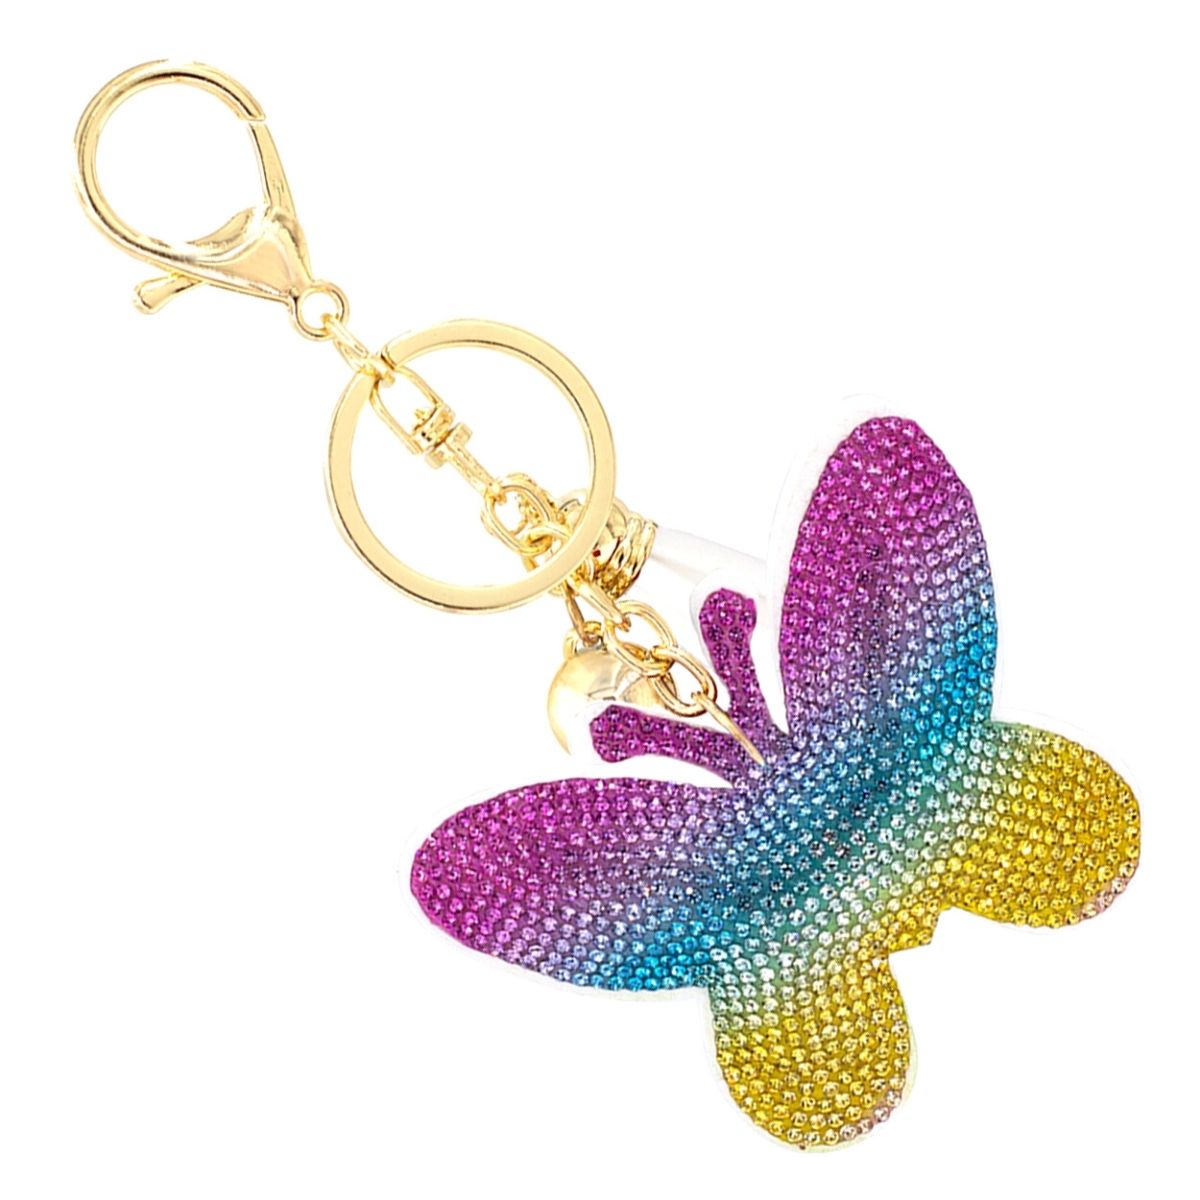 Rainbow Butterfly Keychain Bag Charm